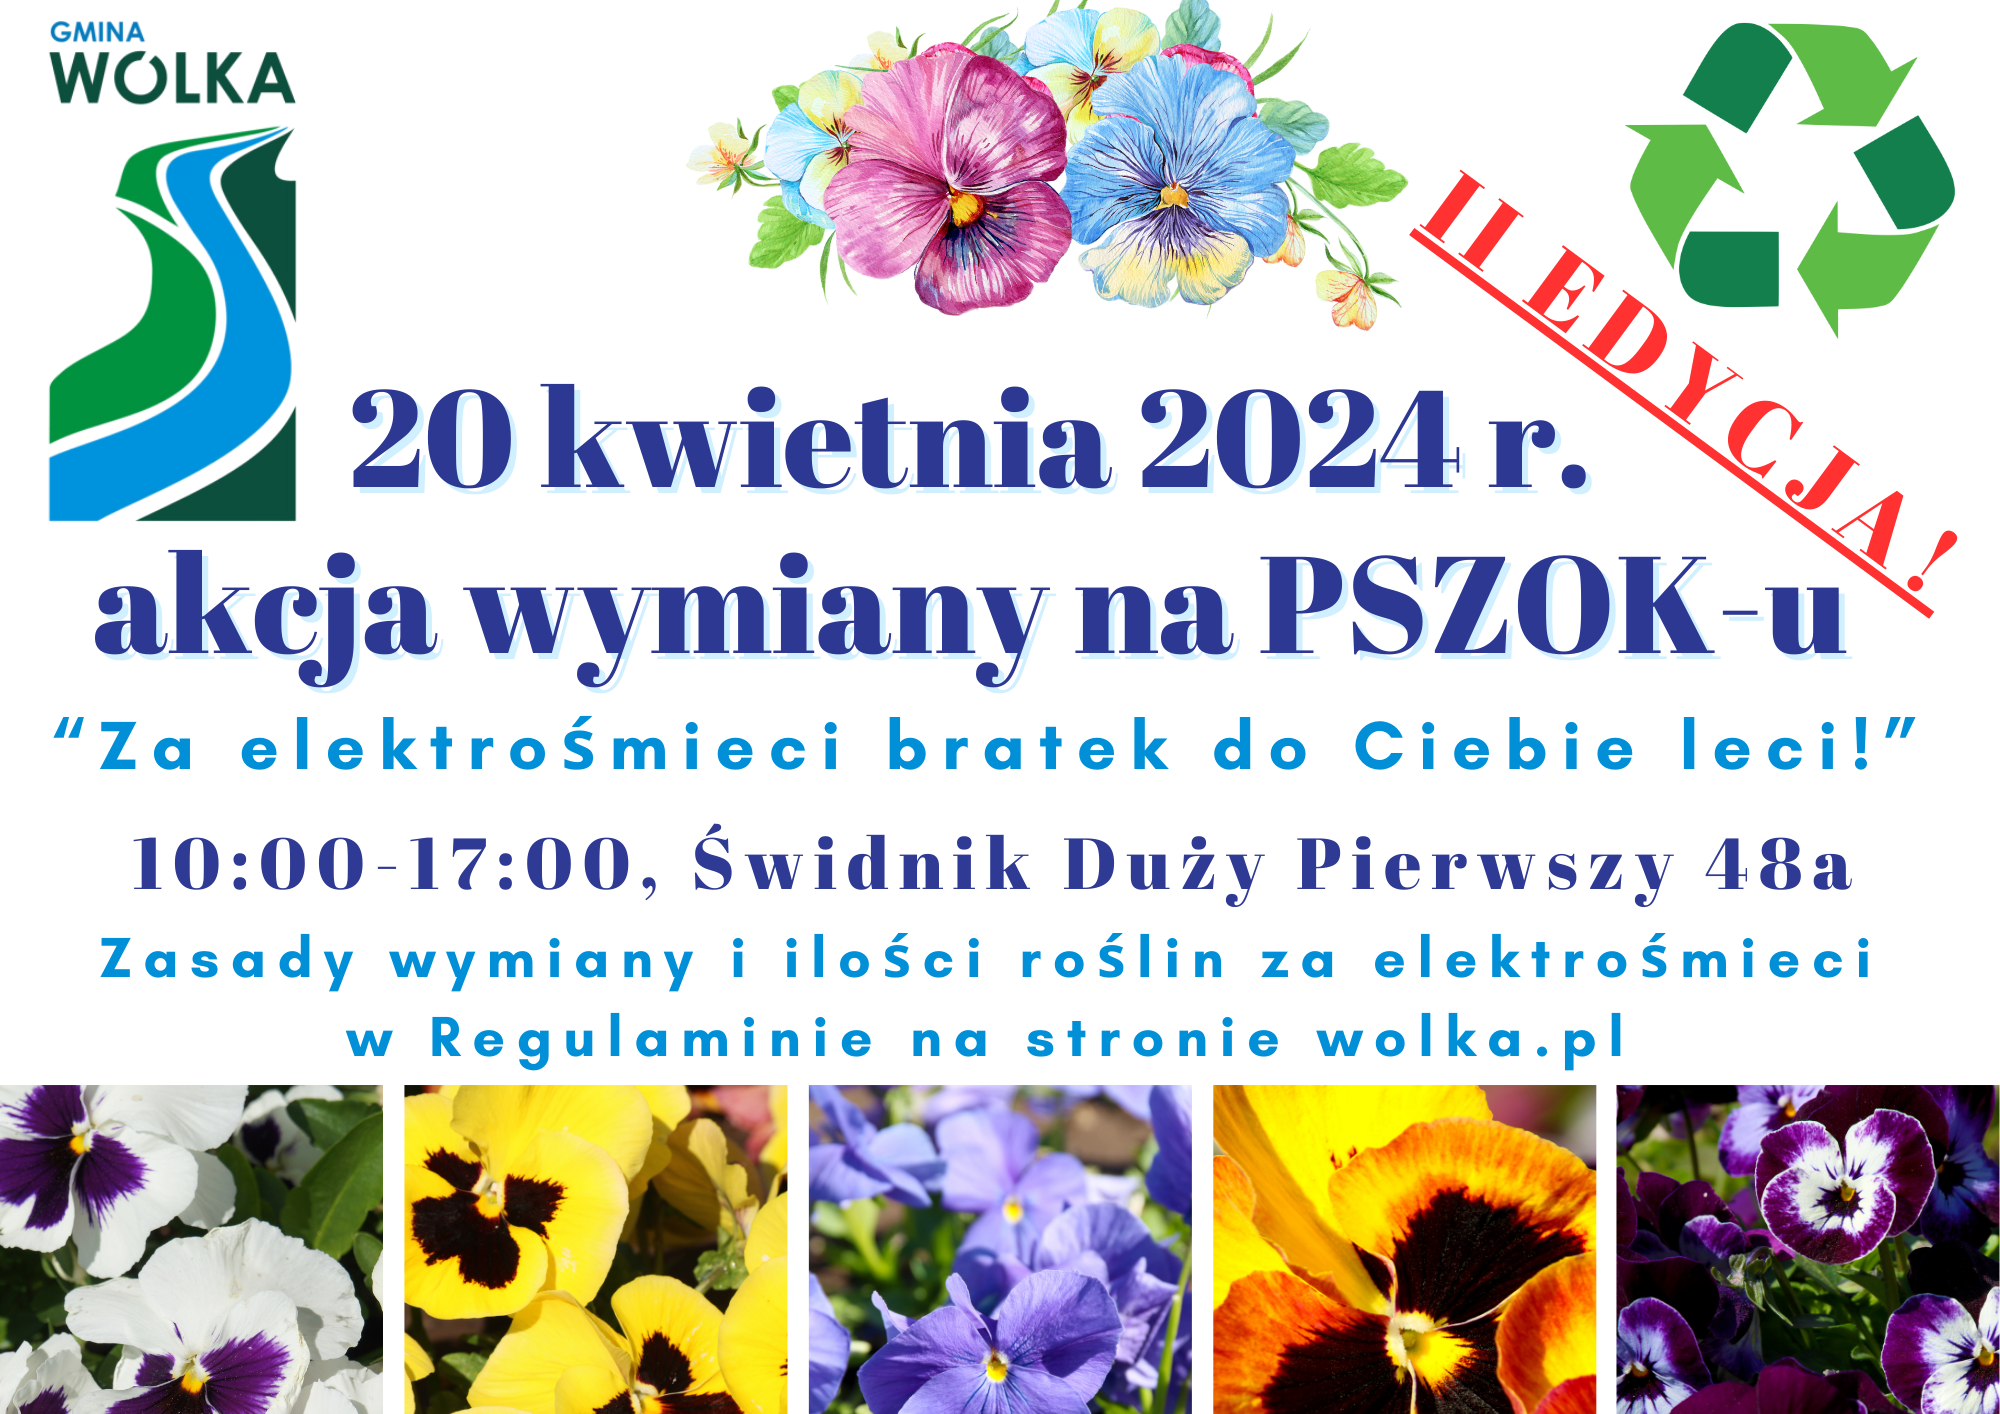 Plakat informacyjny o akcji wymiany elektrośmieci na rośliny w Gminie Wólka, 20 kwietnia 2024, z kolorowymi zdjęciami kwiatów oraz symbolami recyklingu.